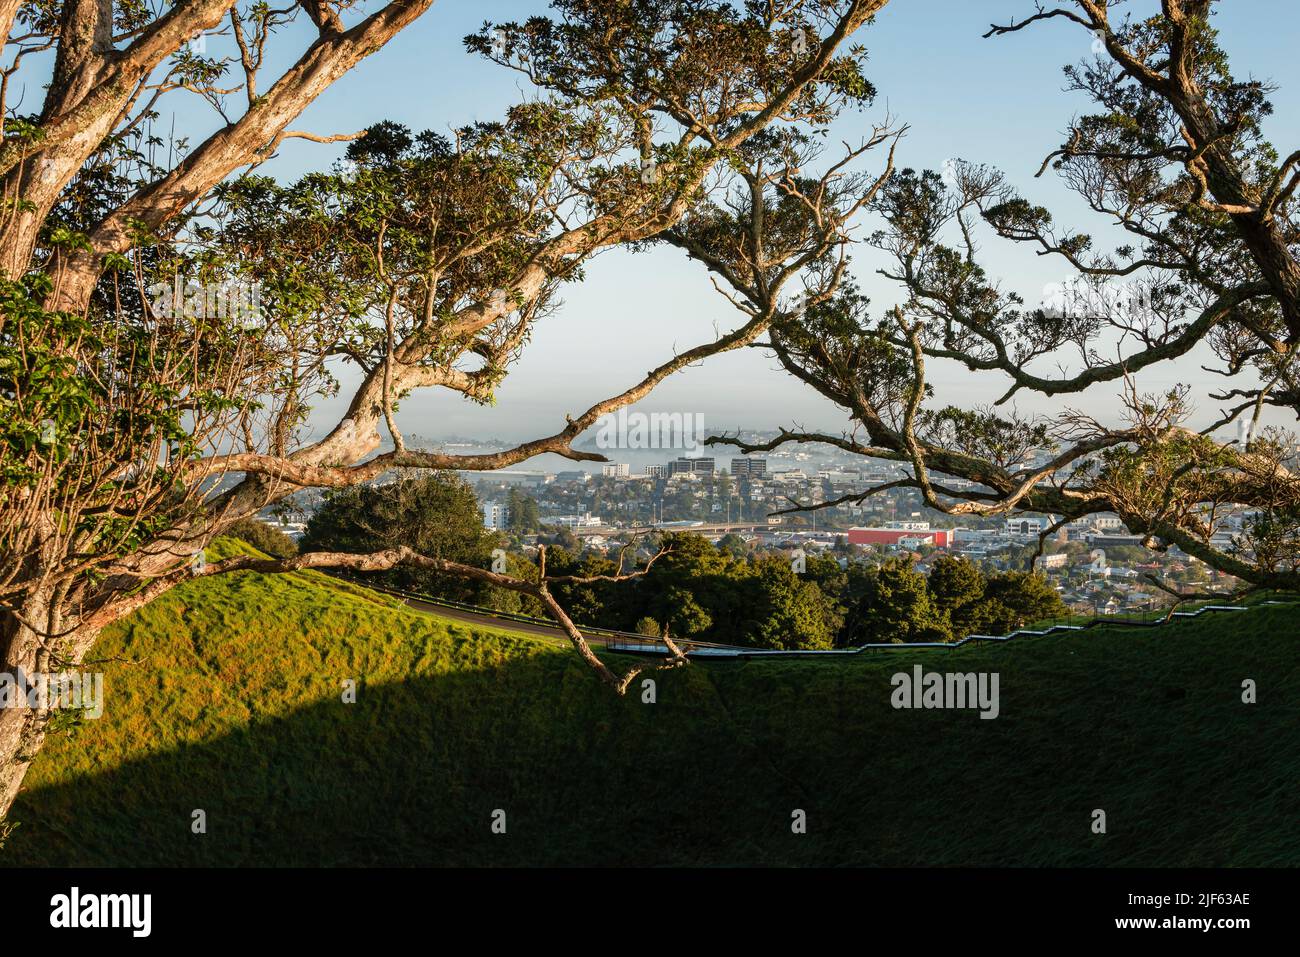 Vista de la ciudad de Auckland desde la cumbre del Monte Eden, enmarcada por un árbol Pohutukawa en la cima de la colina. Foto de stock